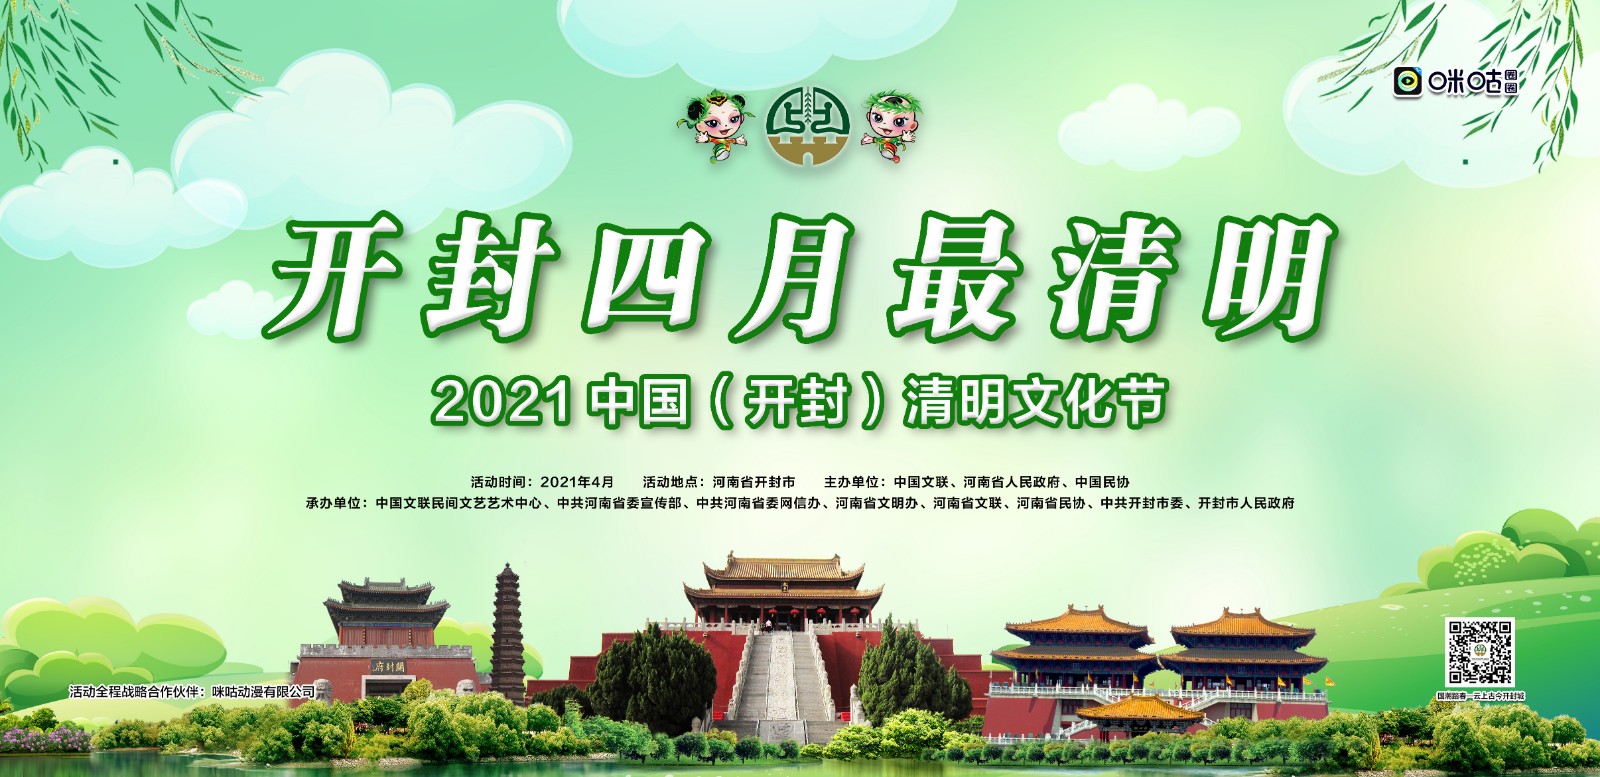 2021年中国开封清明文化节开幕式